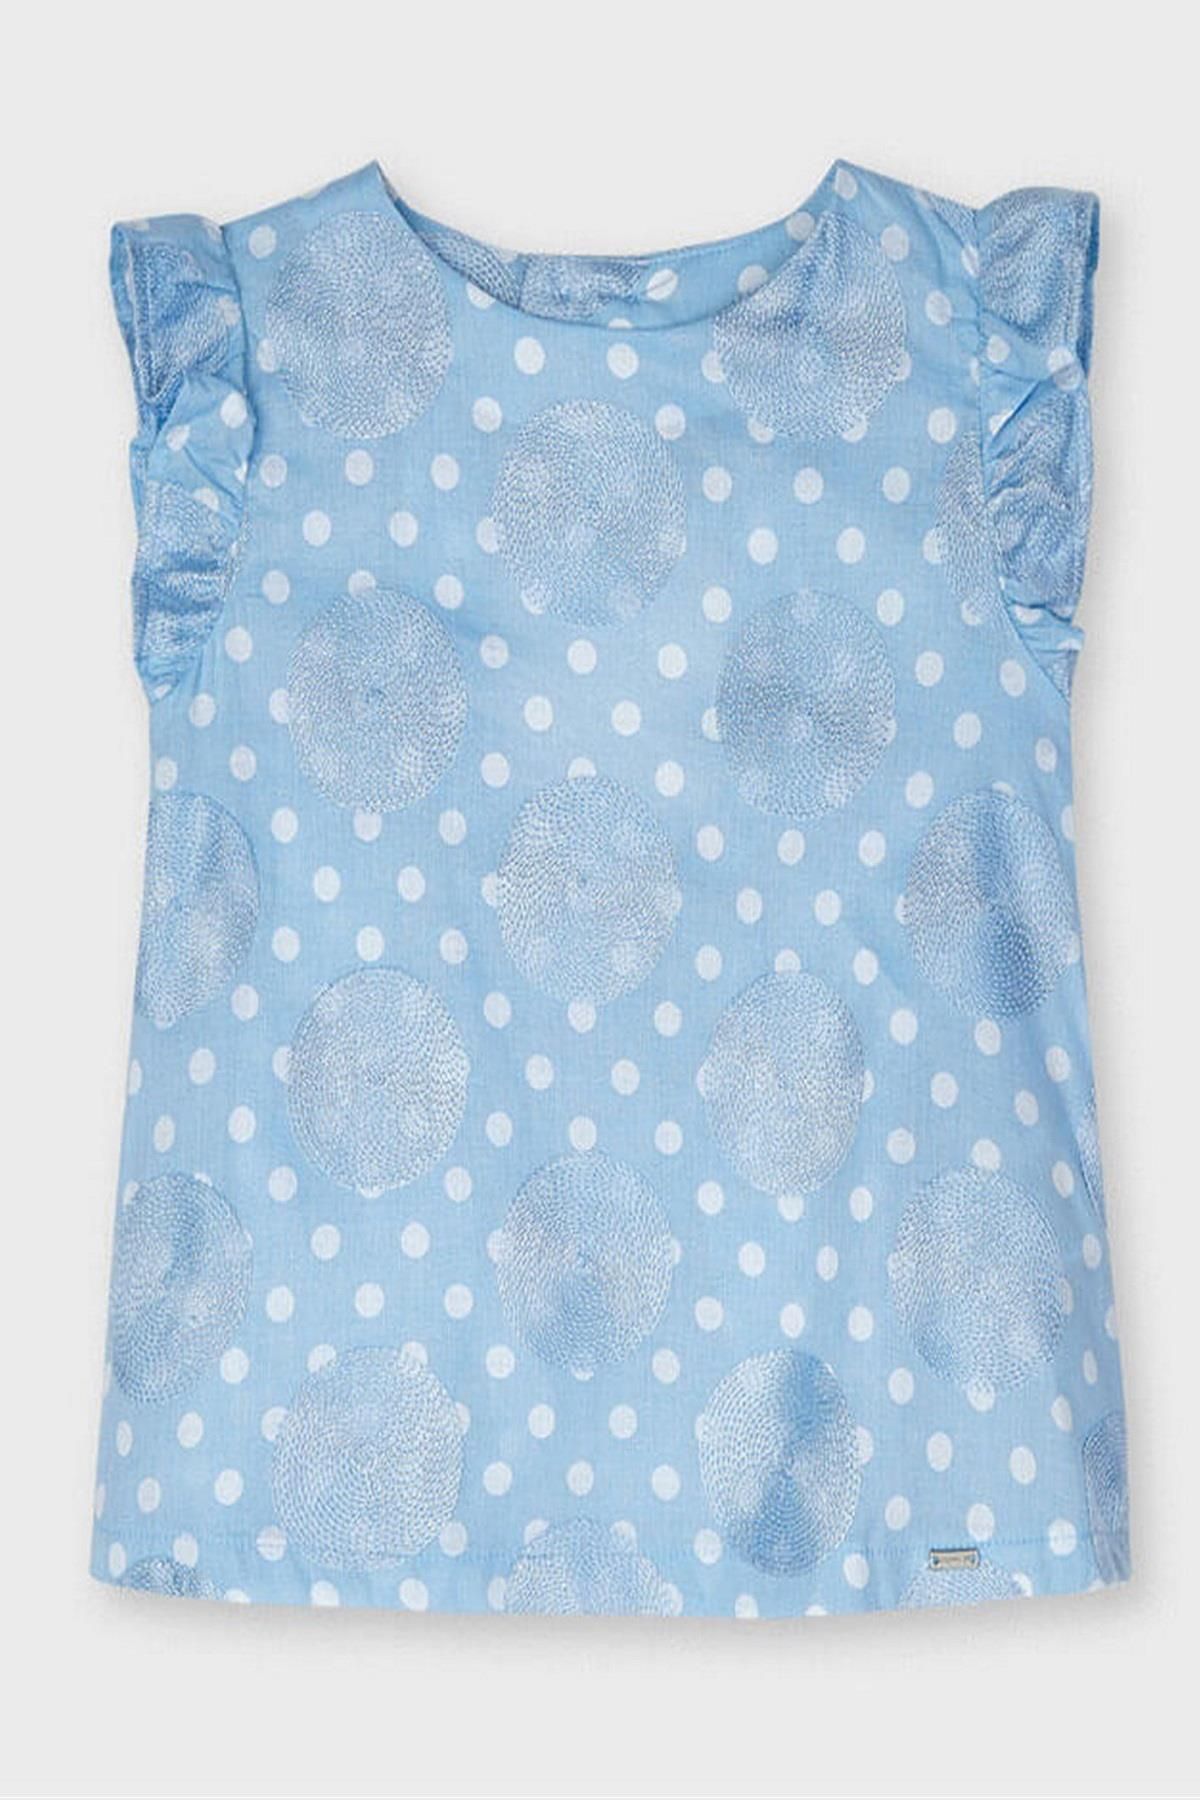 Mayoral Kız Çocuk Puantiyeli Keten Bluz 3188 Mavi